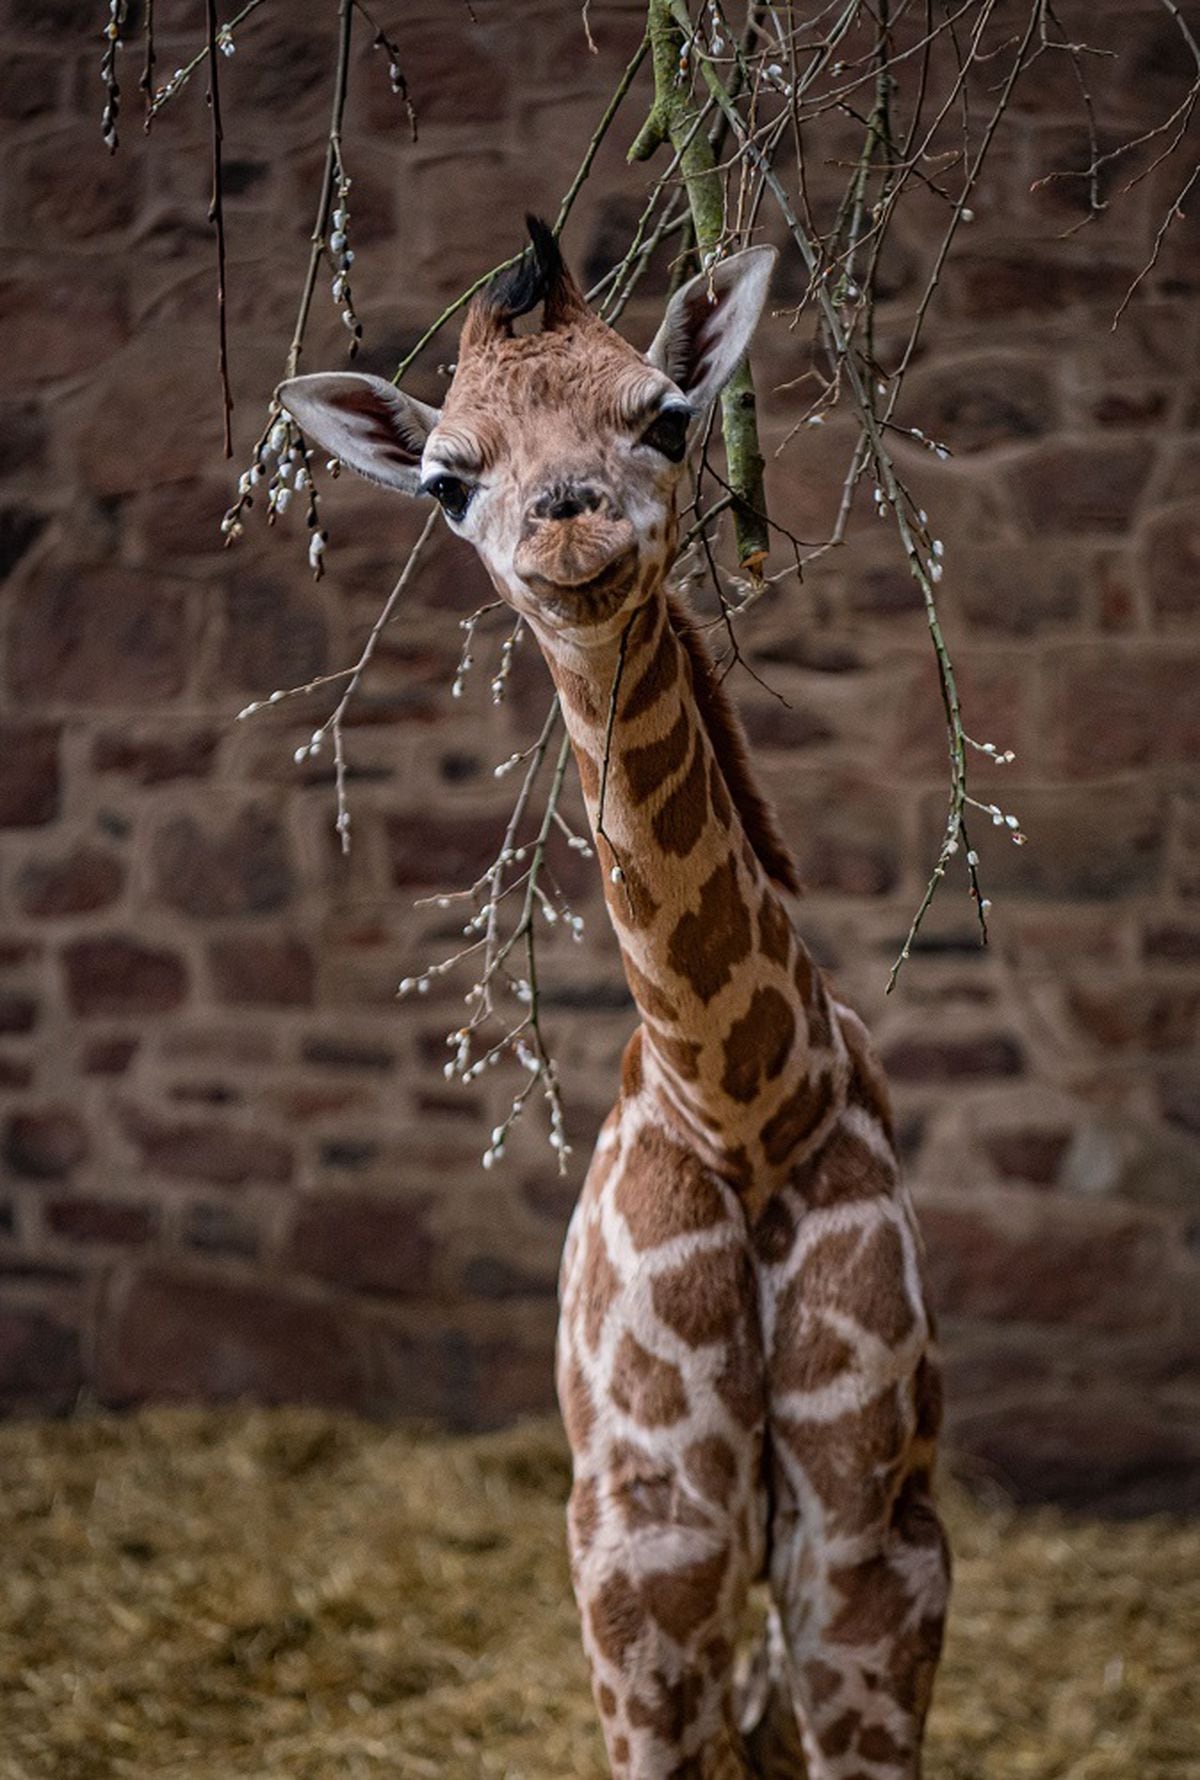 A rare baby giraffe has been born at Chester Zoo